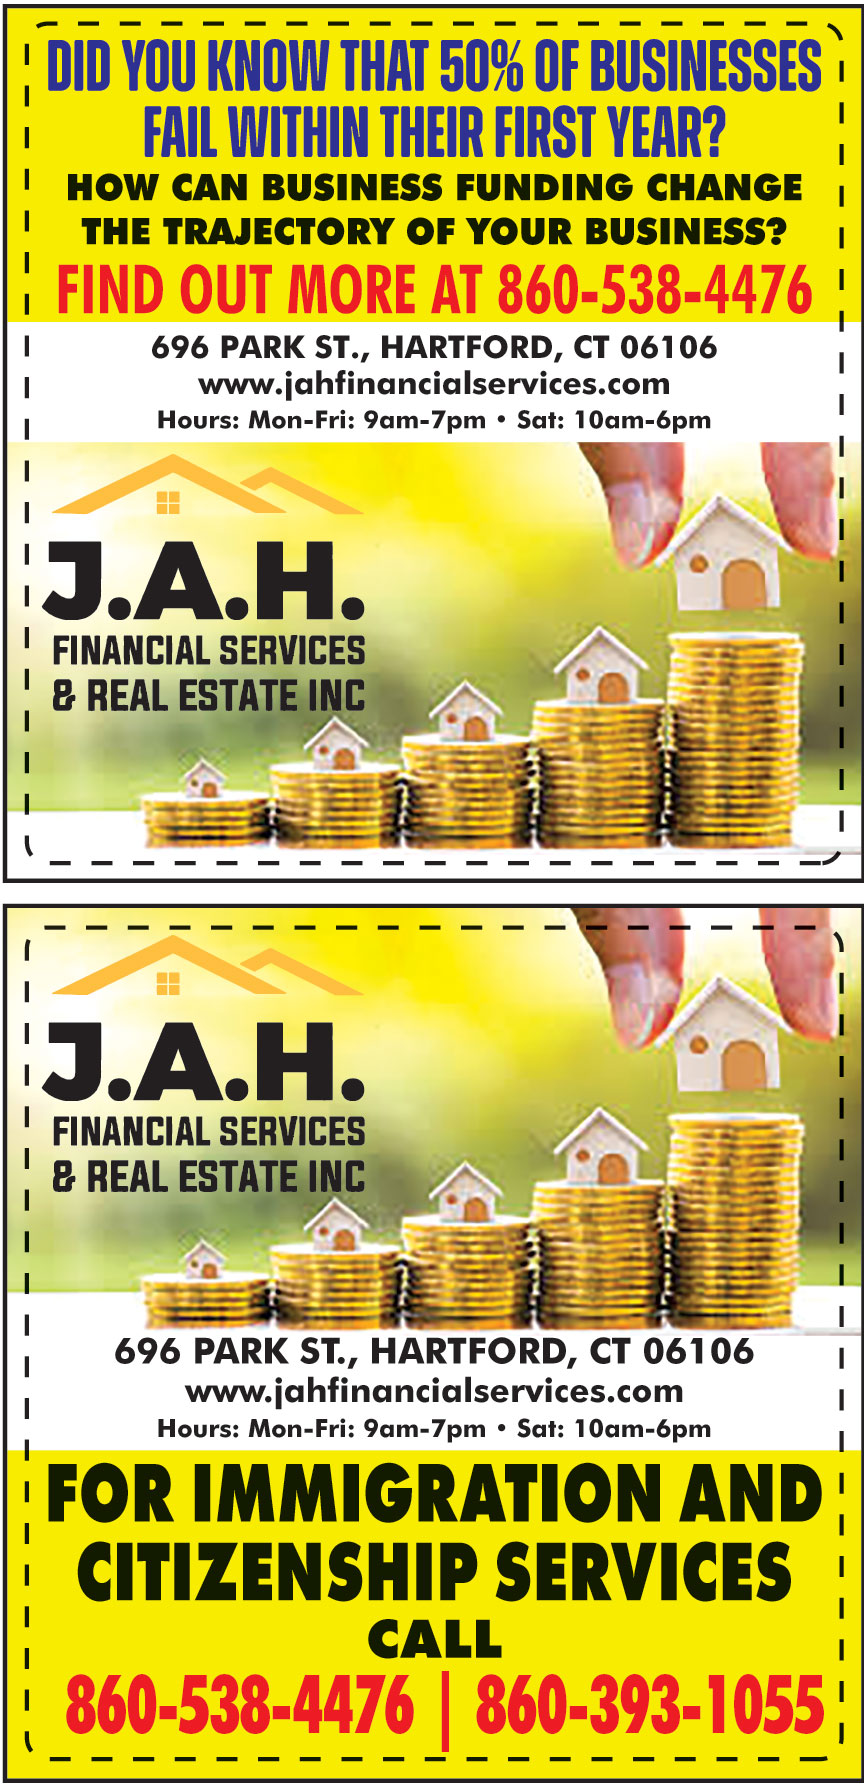 JAH FINANCIAL SERVICES